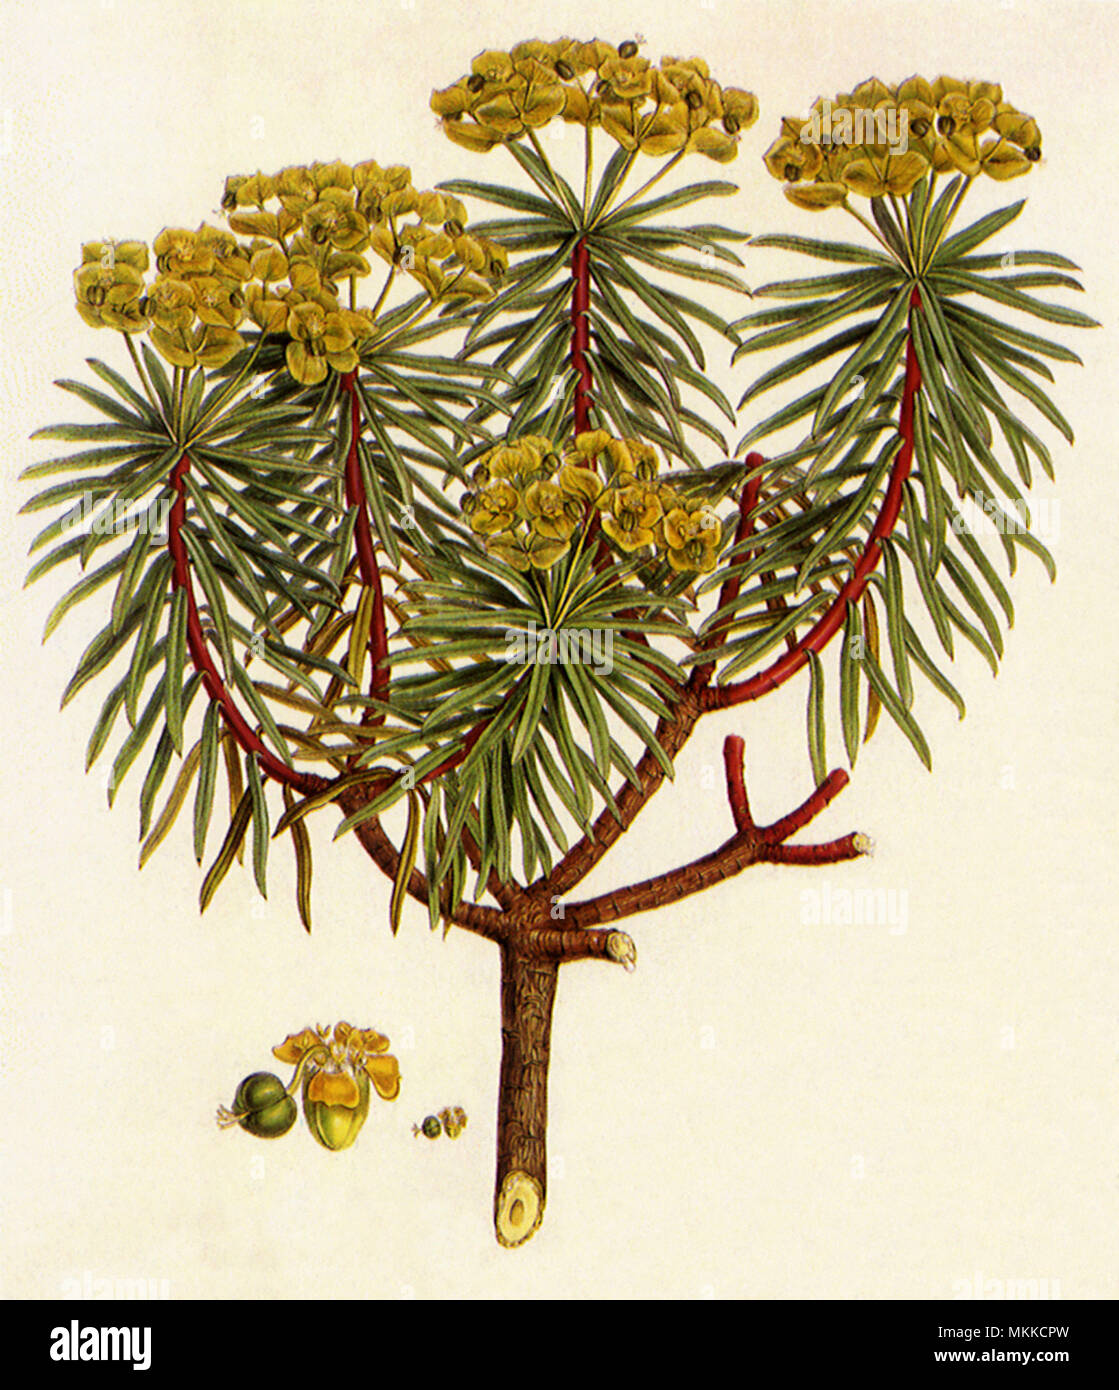 Spurge, Euphorbia dendroides Stock Photo